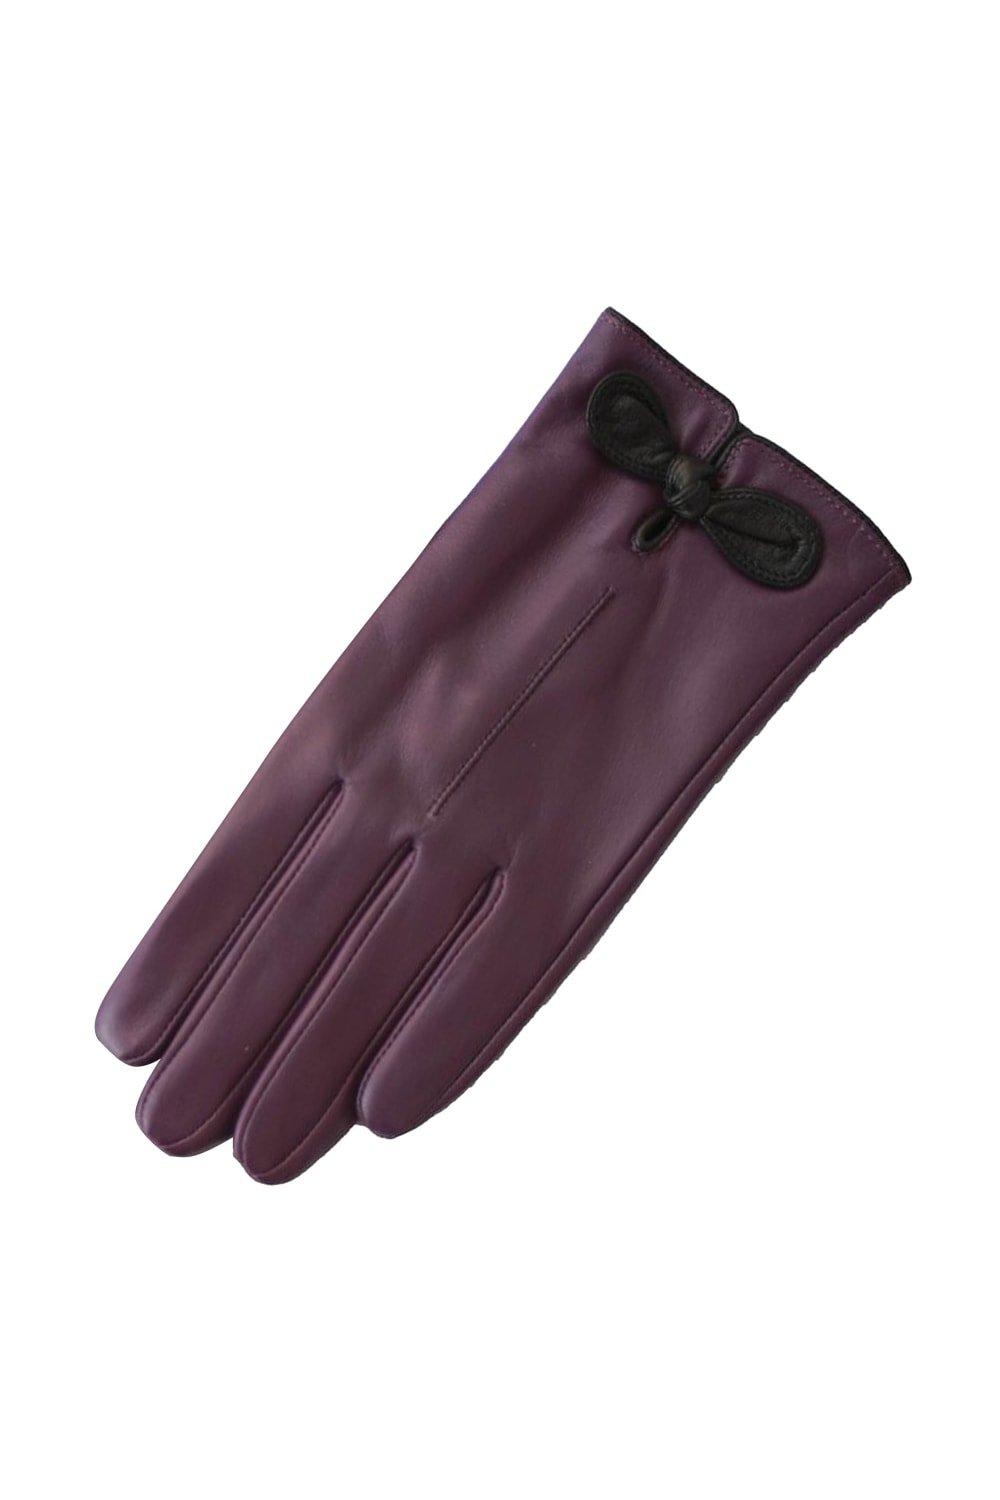 Кожаные перчатки с контрастным бантом Eastern Counties Leather, фиолетовый 1 пара кожаные рабочие перчатки класса премиум